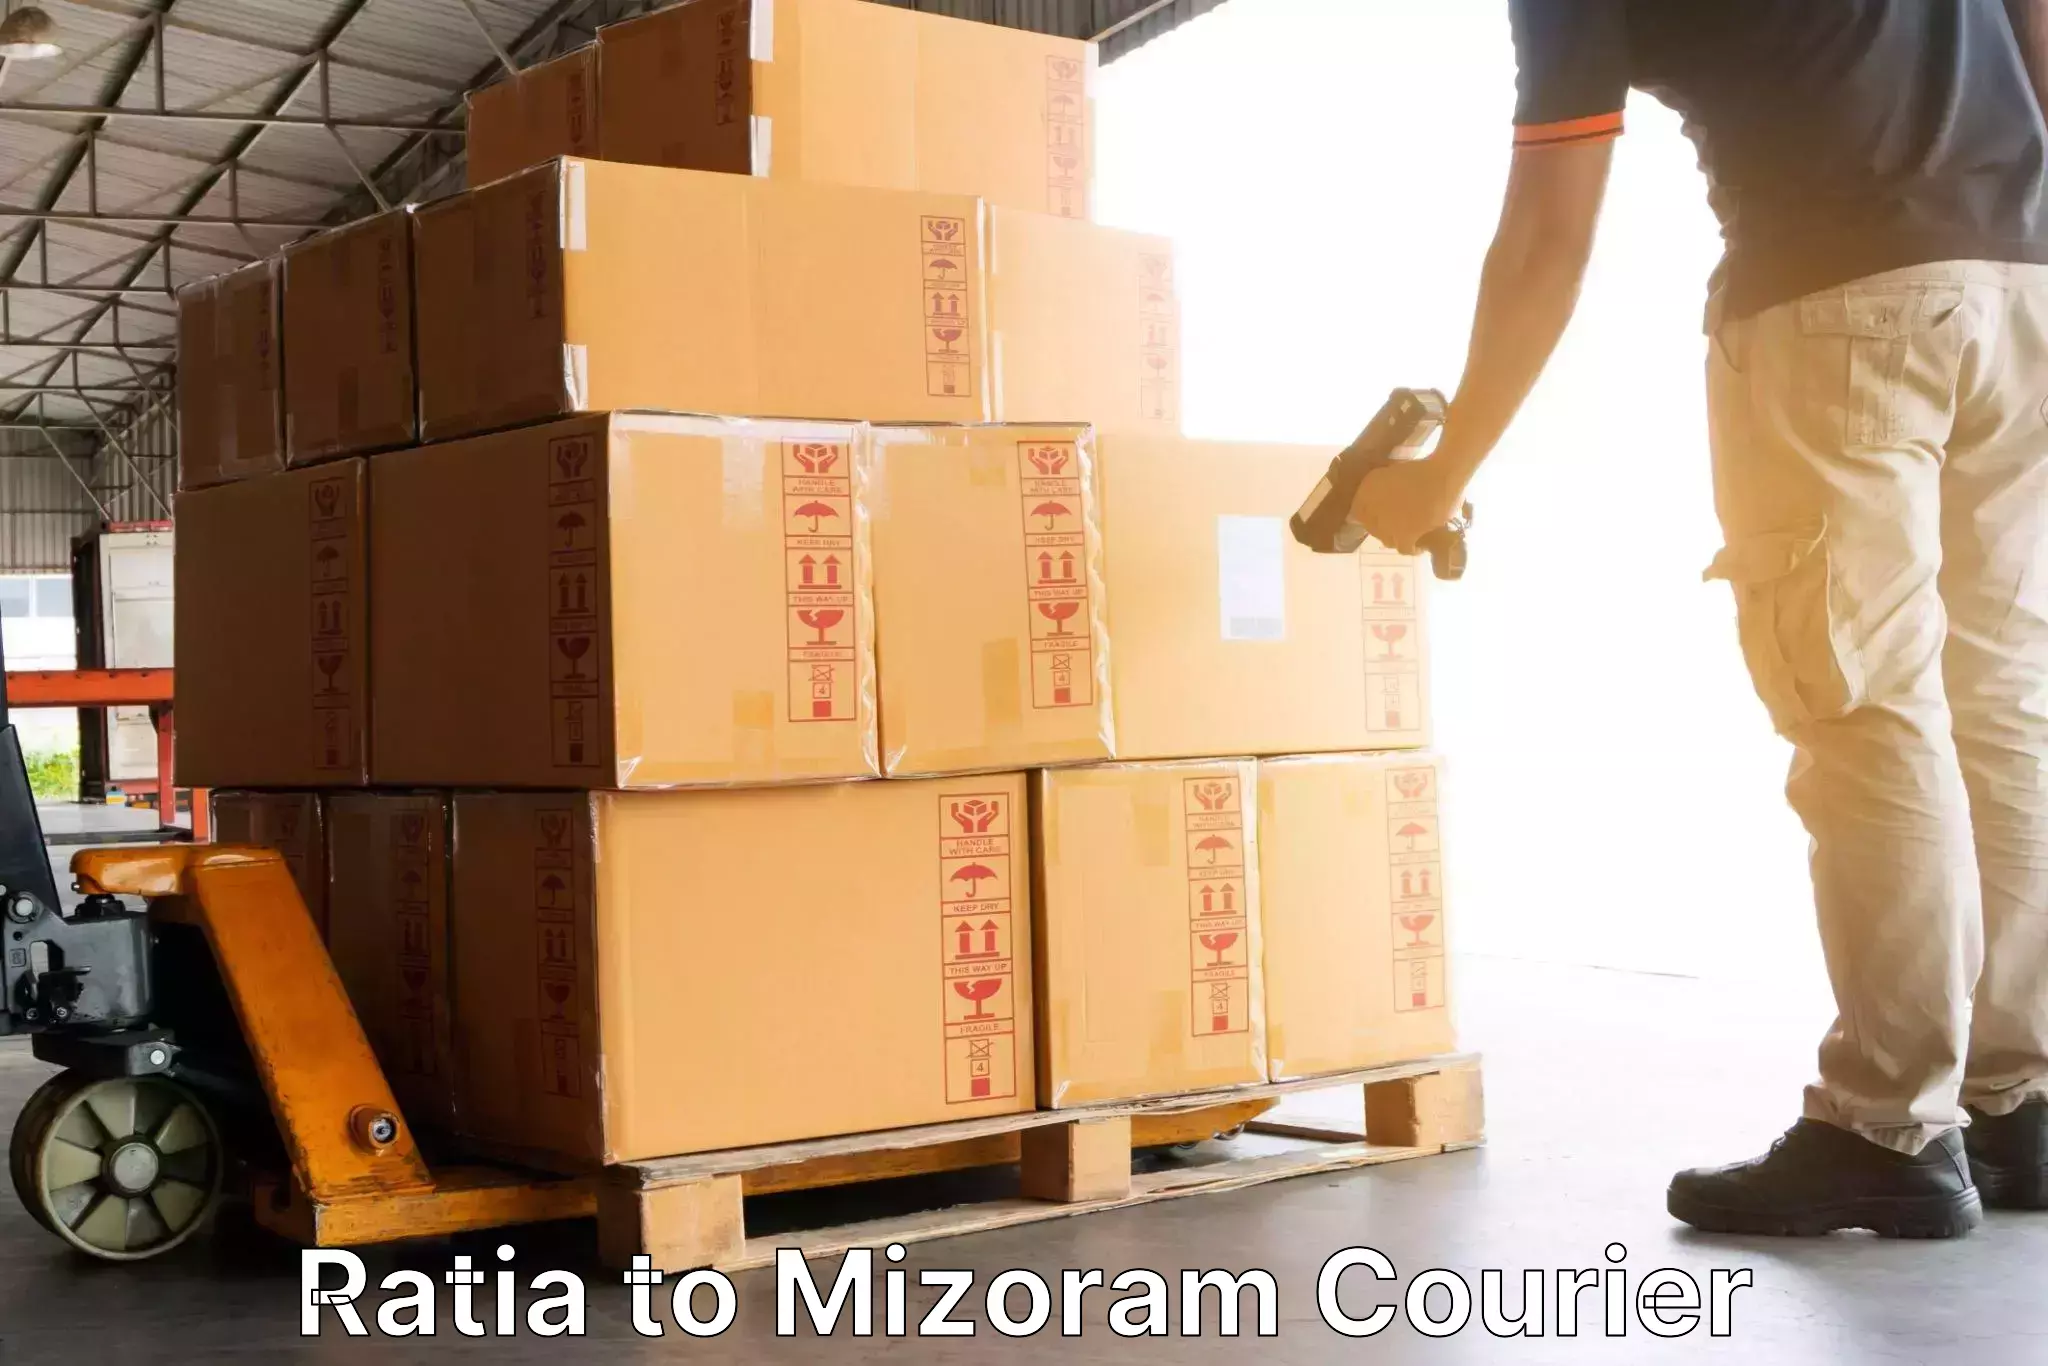 Efficient parcel service Ratia to Lawngtlai